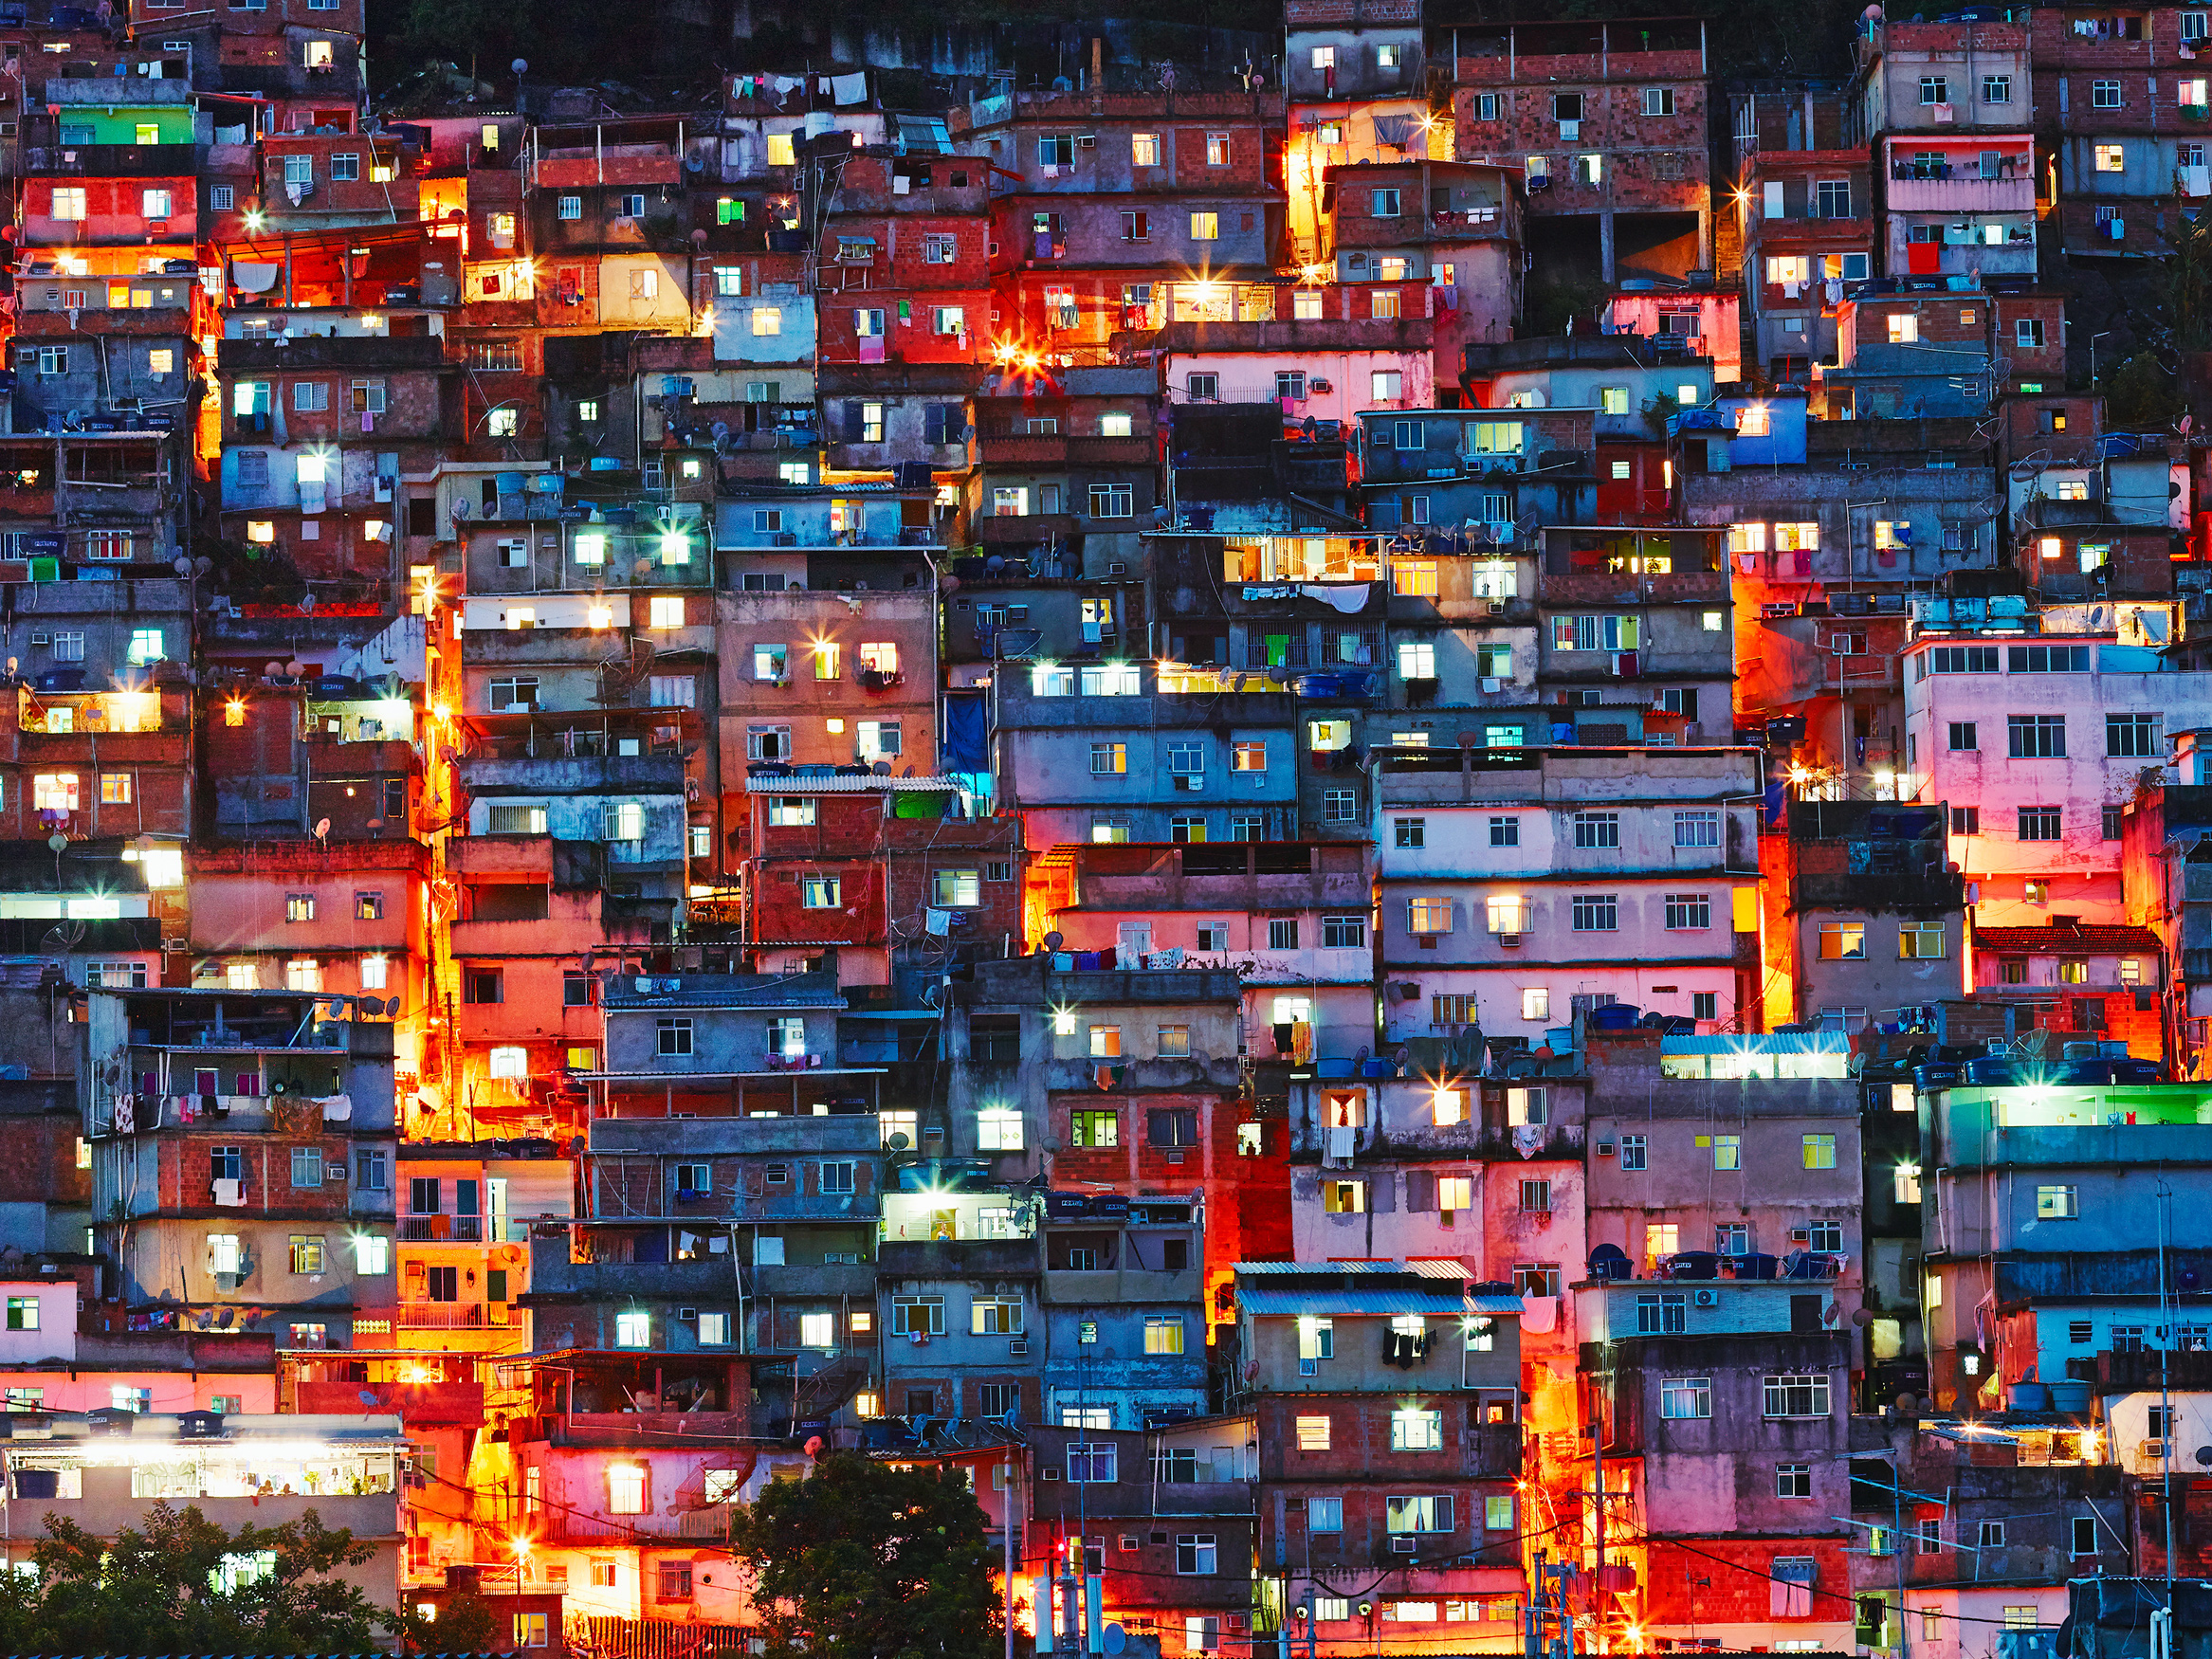 "Morro Cantagalo, Favela"